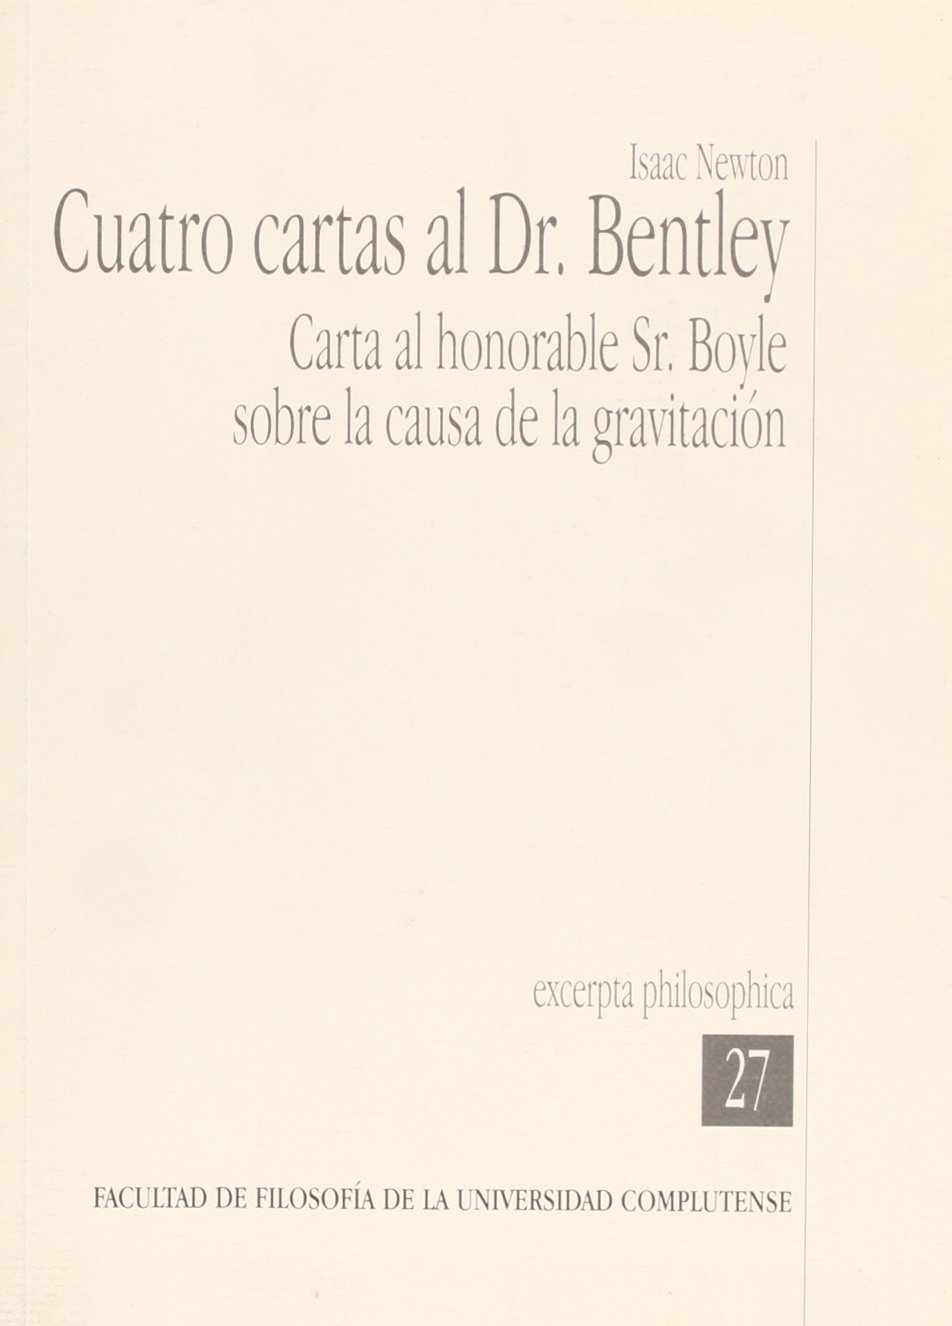 CUATRO CARTAS AL R. BENTLEY EXPERTA PHILOSOPHICA Nª27